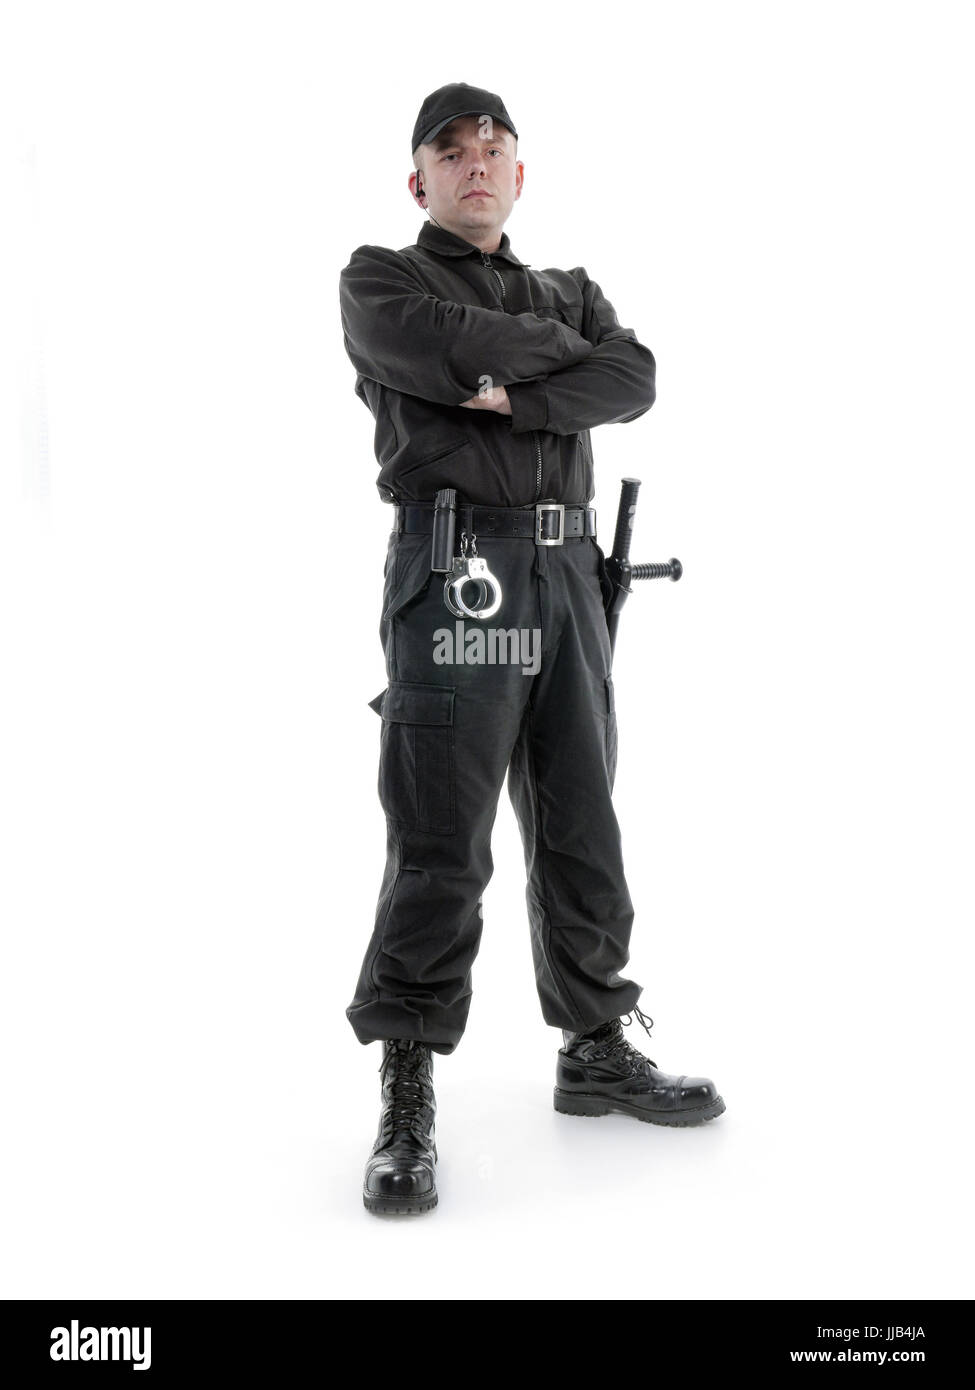 Security-Mann in schwarzer uniform geschossen ausgestattet mit Polizei-Club und Handschellen selbstbewusst, stehend auf weiß Stockfoto